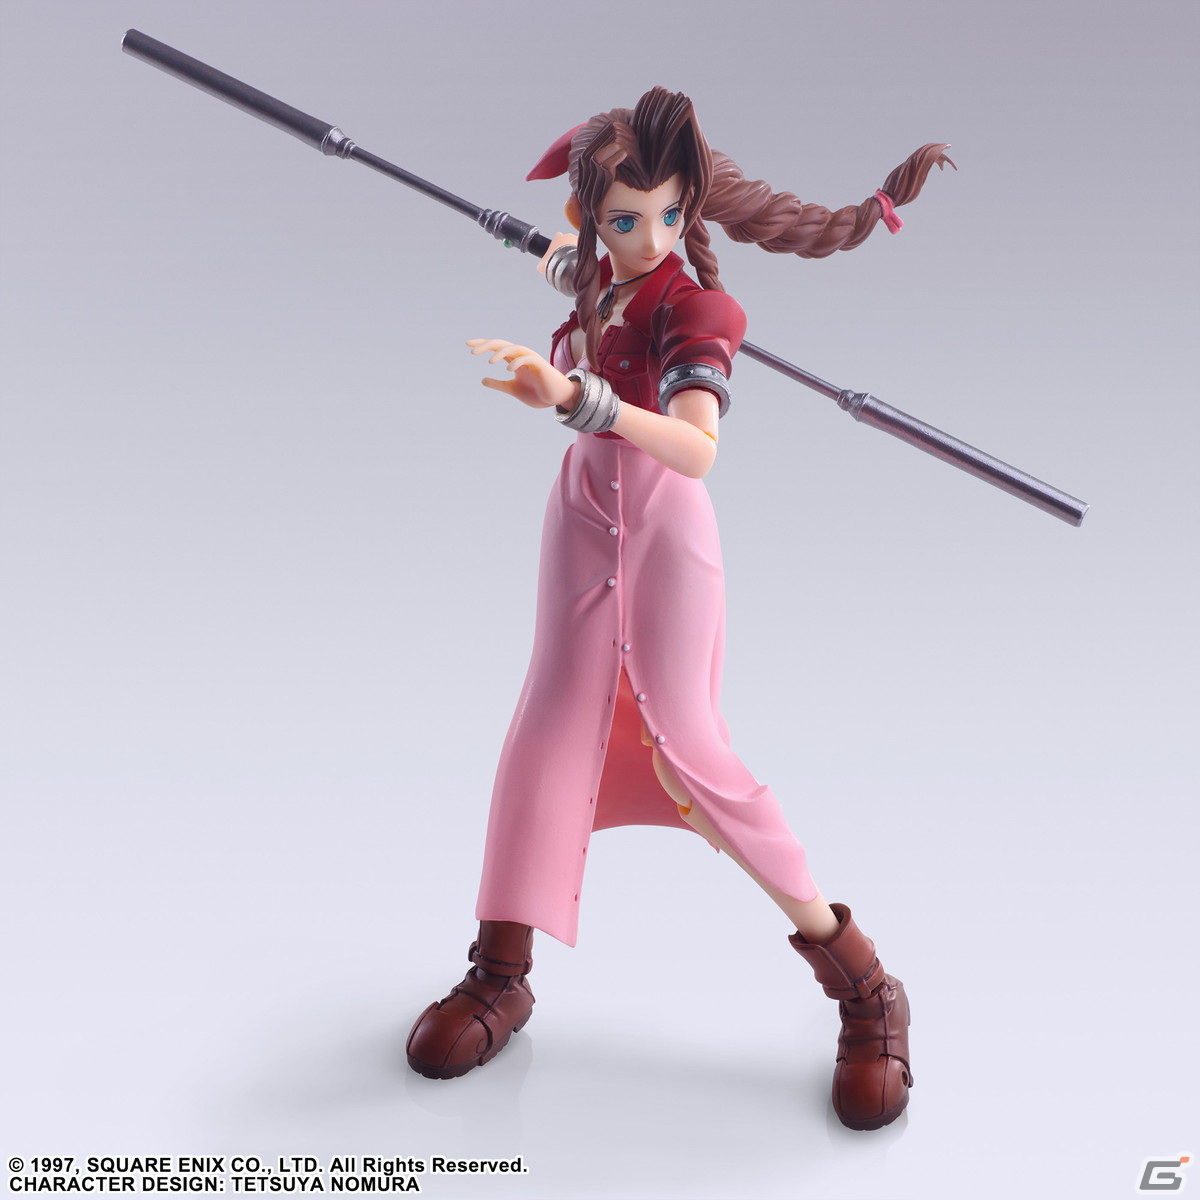 SE官方推出 原版《最终幻想7》爱丽丝、发型和衣着都具有怀旧的外观。以及包括双手合十状态在内的各种可互换的手部零件和武器。蒂法可动手办